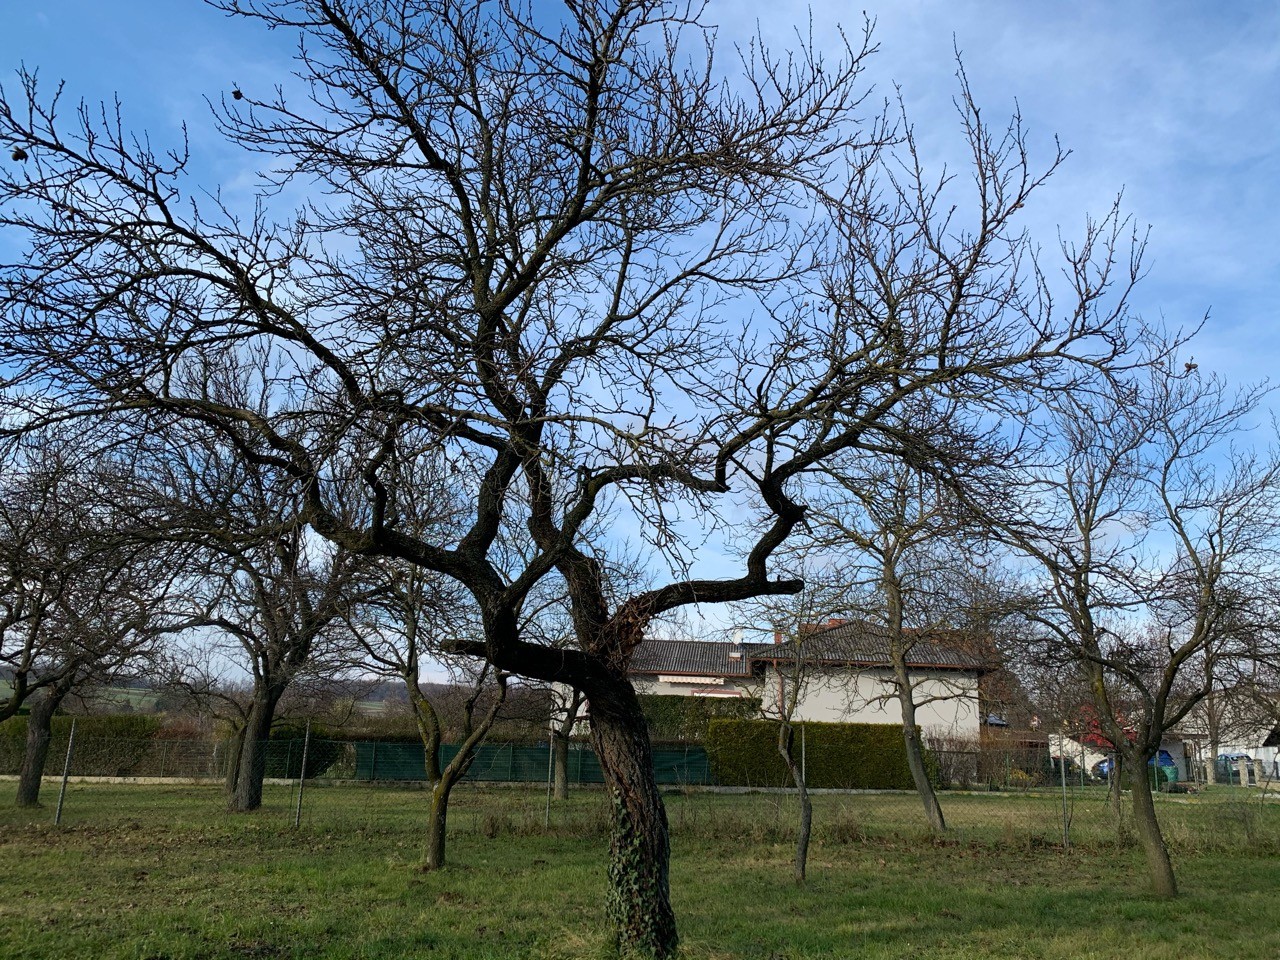 Der Marillenbaum ist entlaubt. | Naturkalender App | 09.12.2020